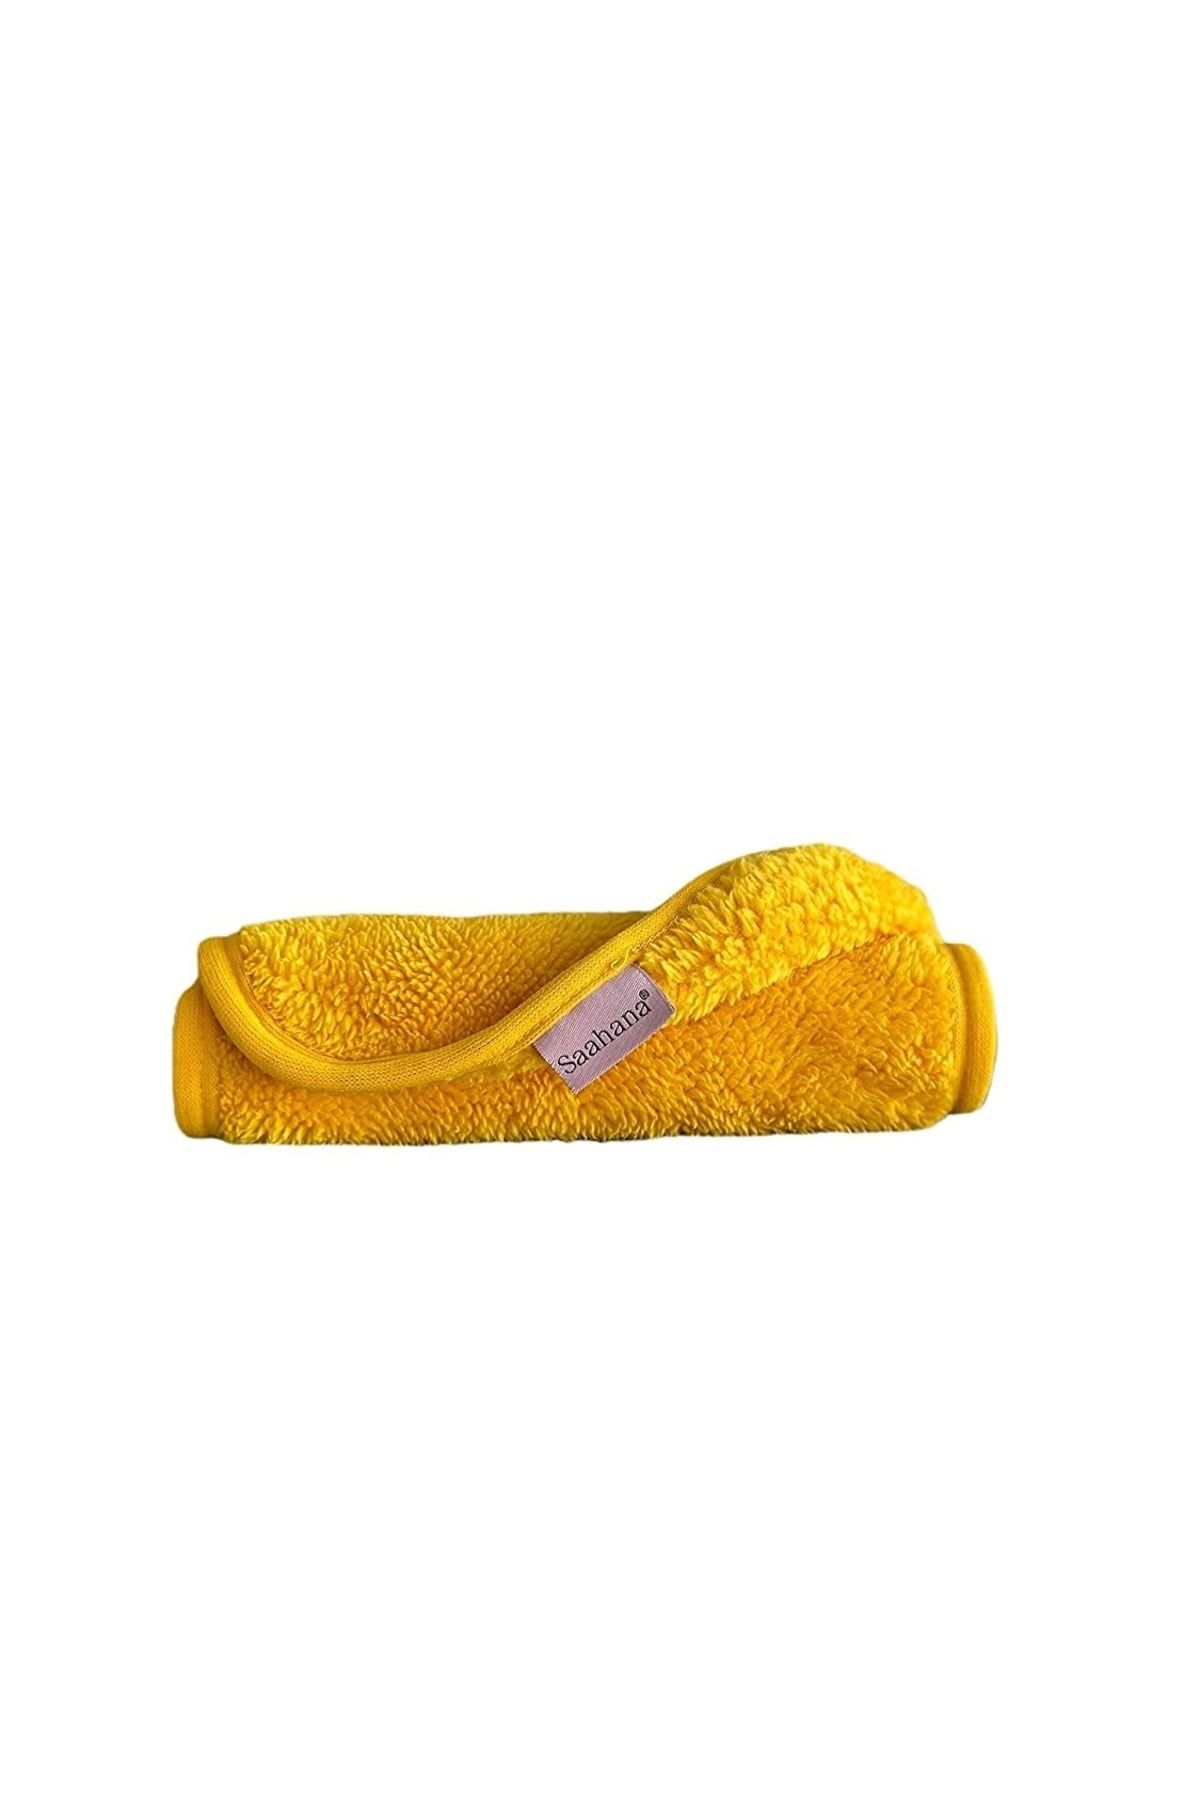 Saahana Kolay Kuruyan, Cildi Tazeleyen Kadın Makyaj Temizleme Havlusu ( Sarı )